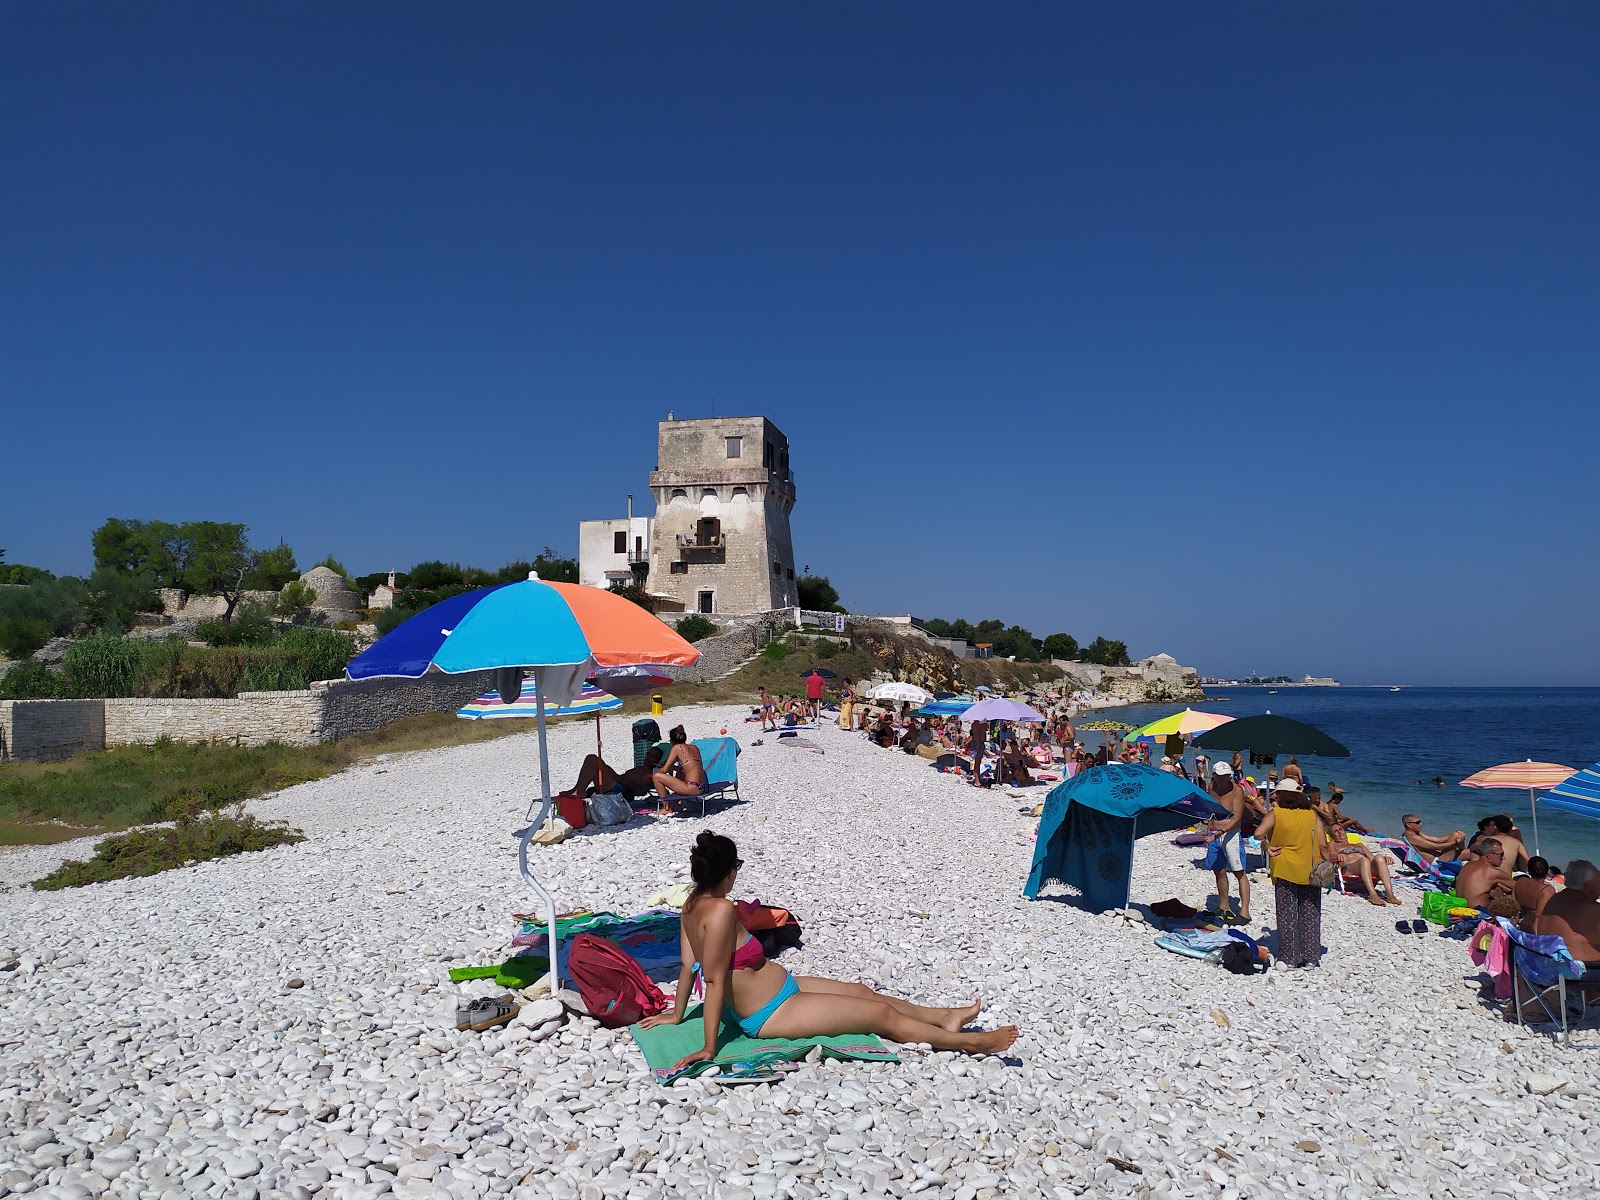 Foto von Spiaggia La Torretta mit heller kies Oberfläche